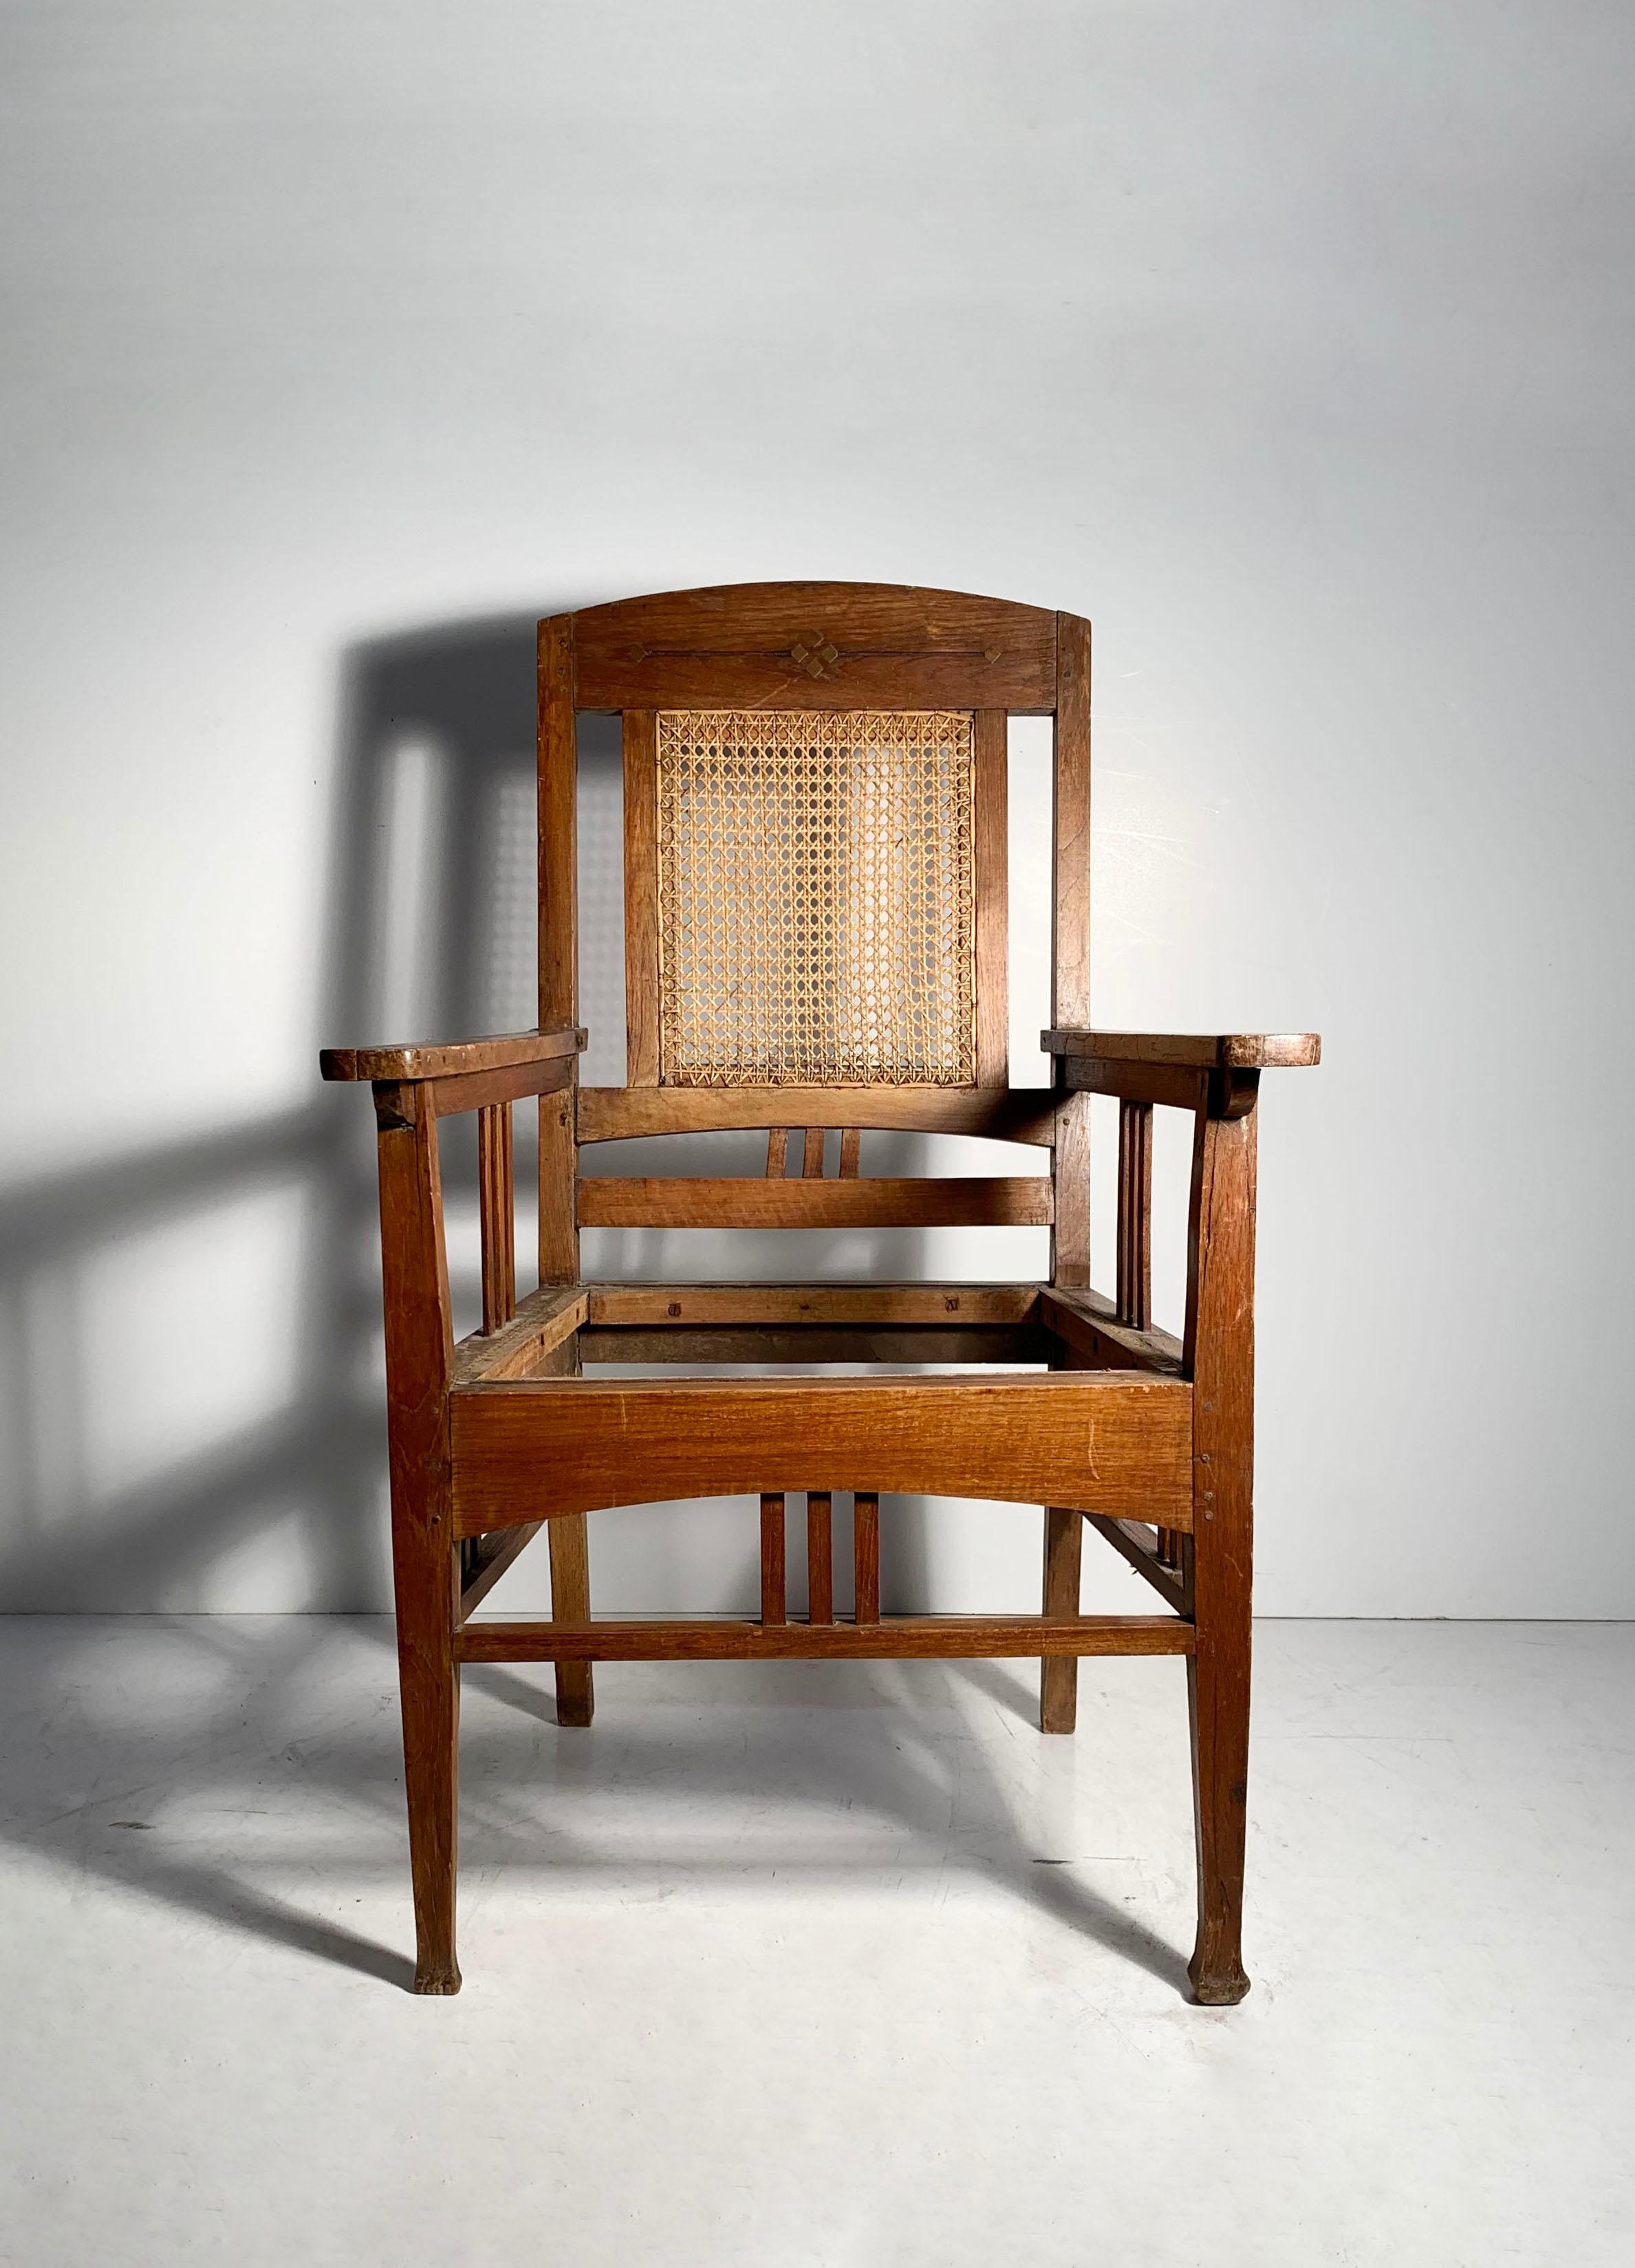 A Beautiful English arts and crafts chair form. Messing-Intarsien. 
Für den Designer ungewiss. Angesichts der Proportionen und des Designs sollte es von jemandem sein, der etwas auf sich hält. 
Zustand wie gefunden. Bitte beachten Sie die Details.